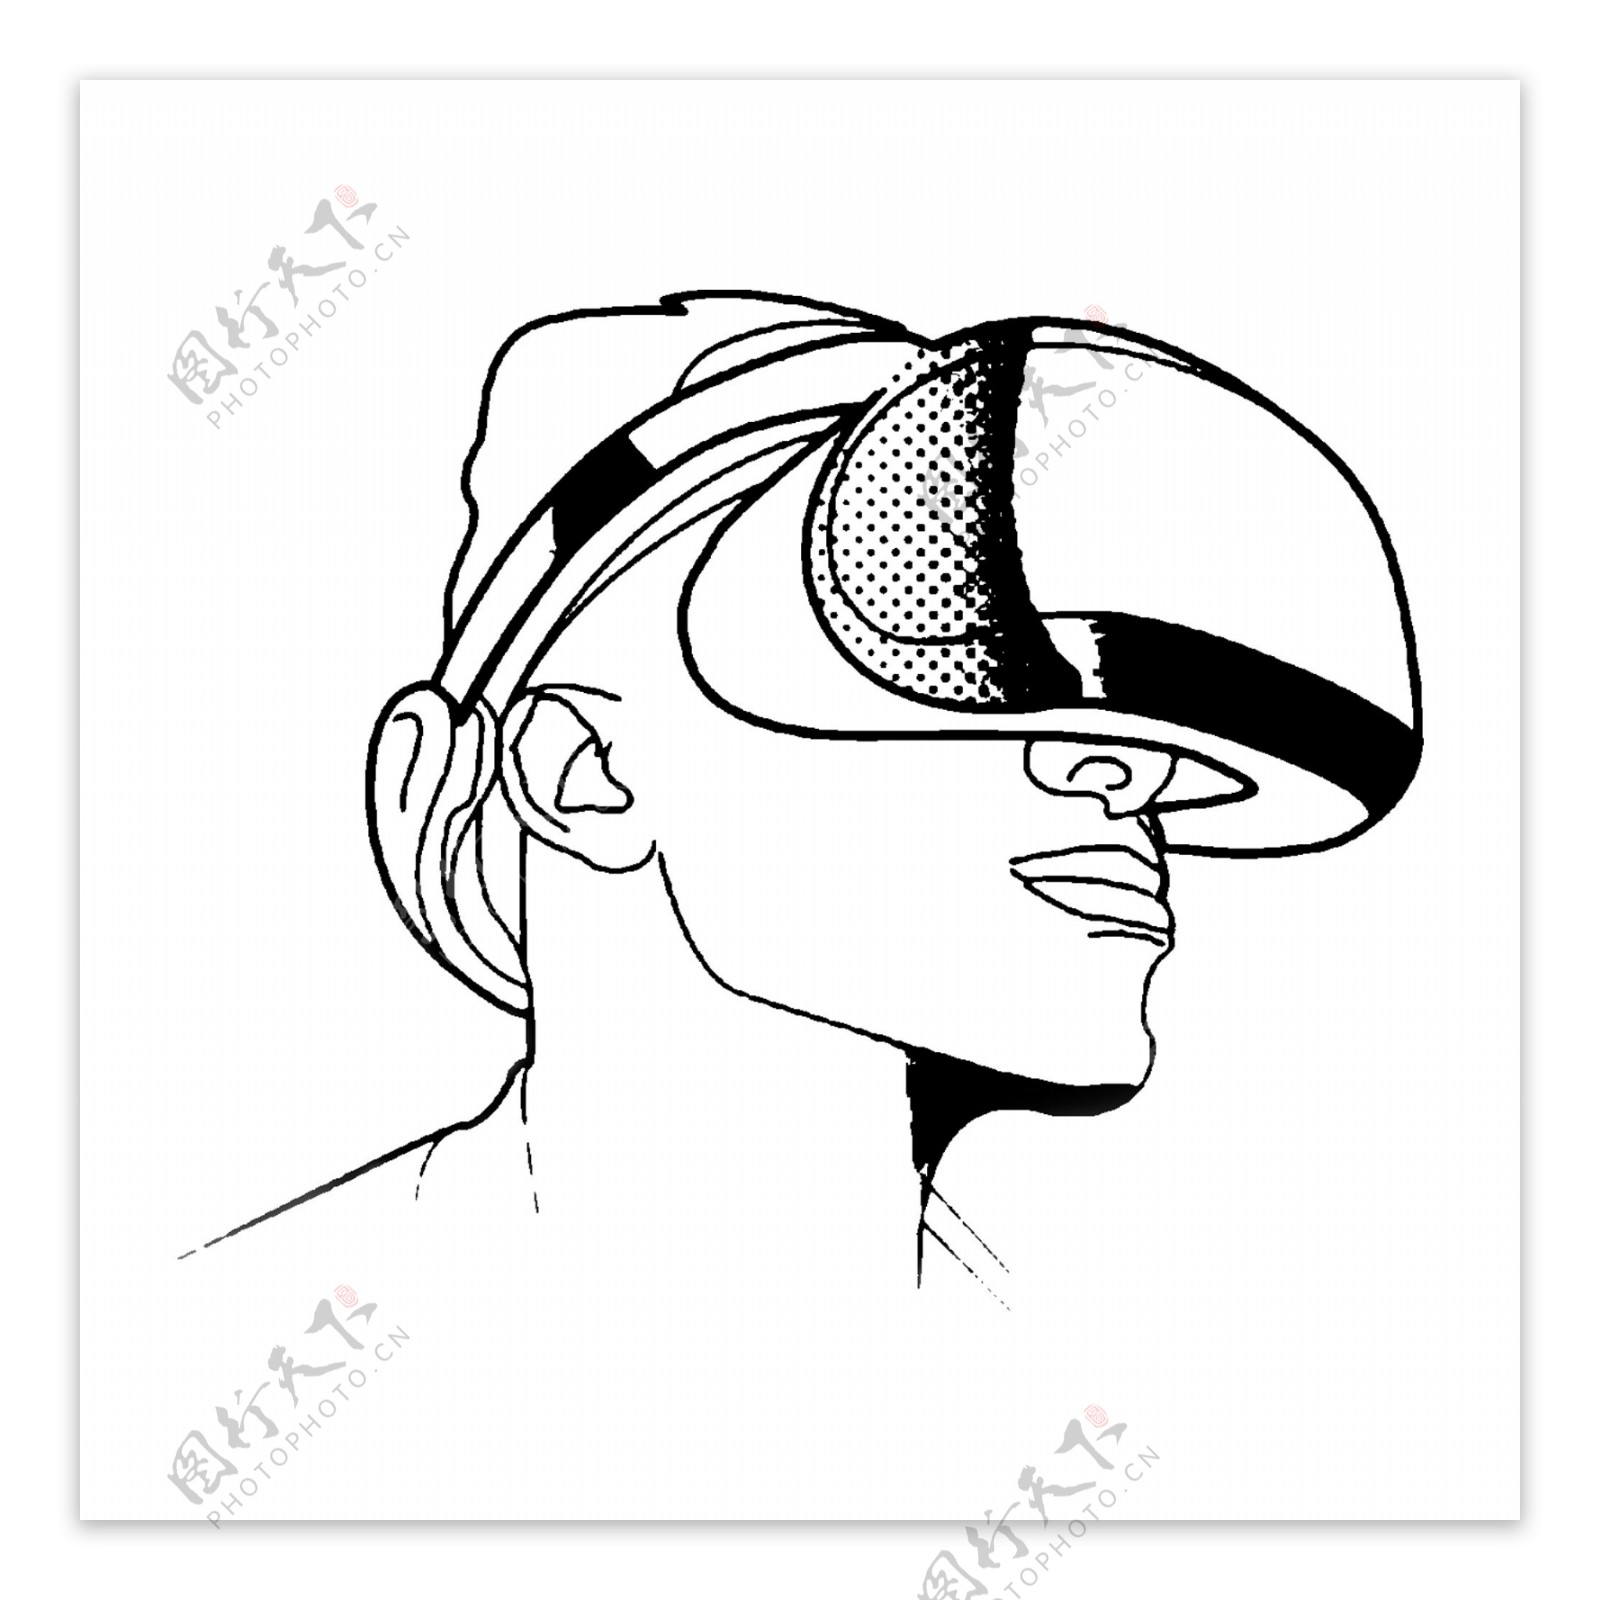 VR虚拟现实人物插画素材